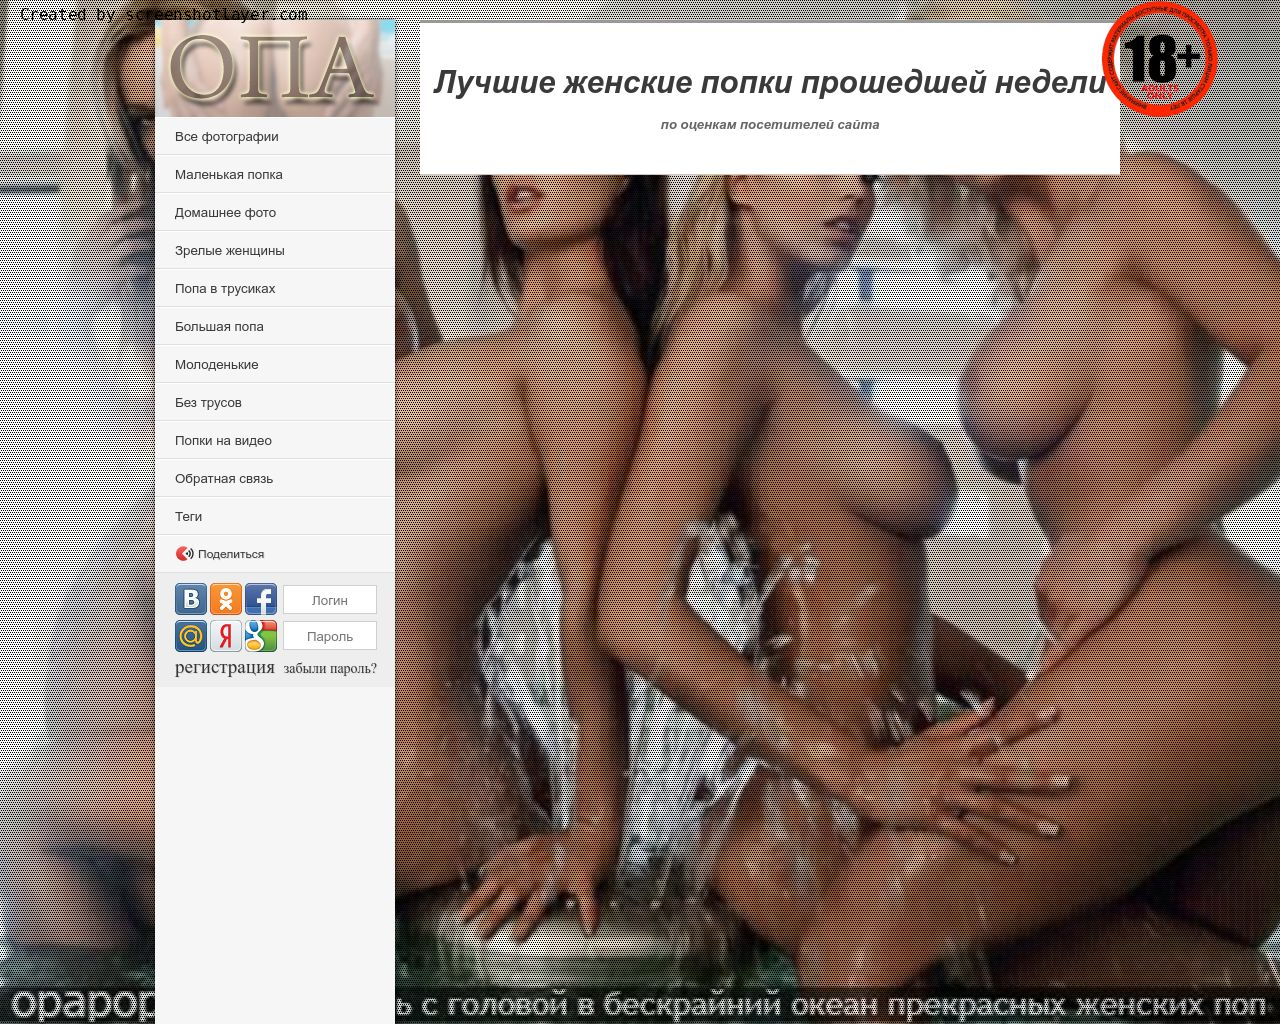 Изображение сайта opapopa.ru в разрешении 1280x1024